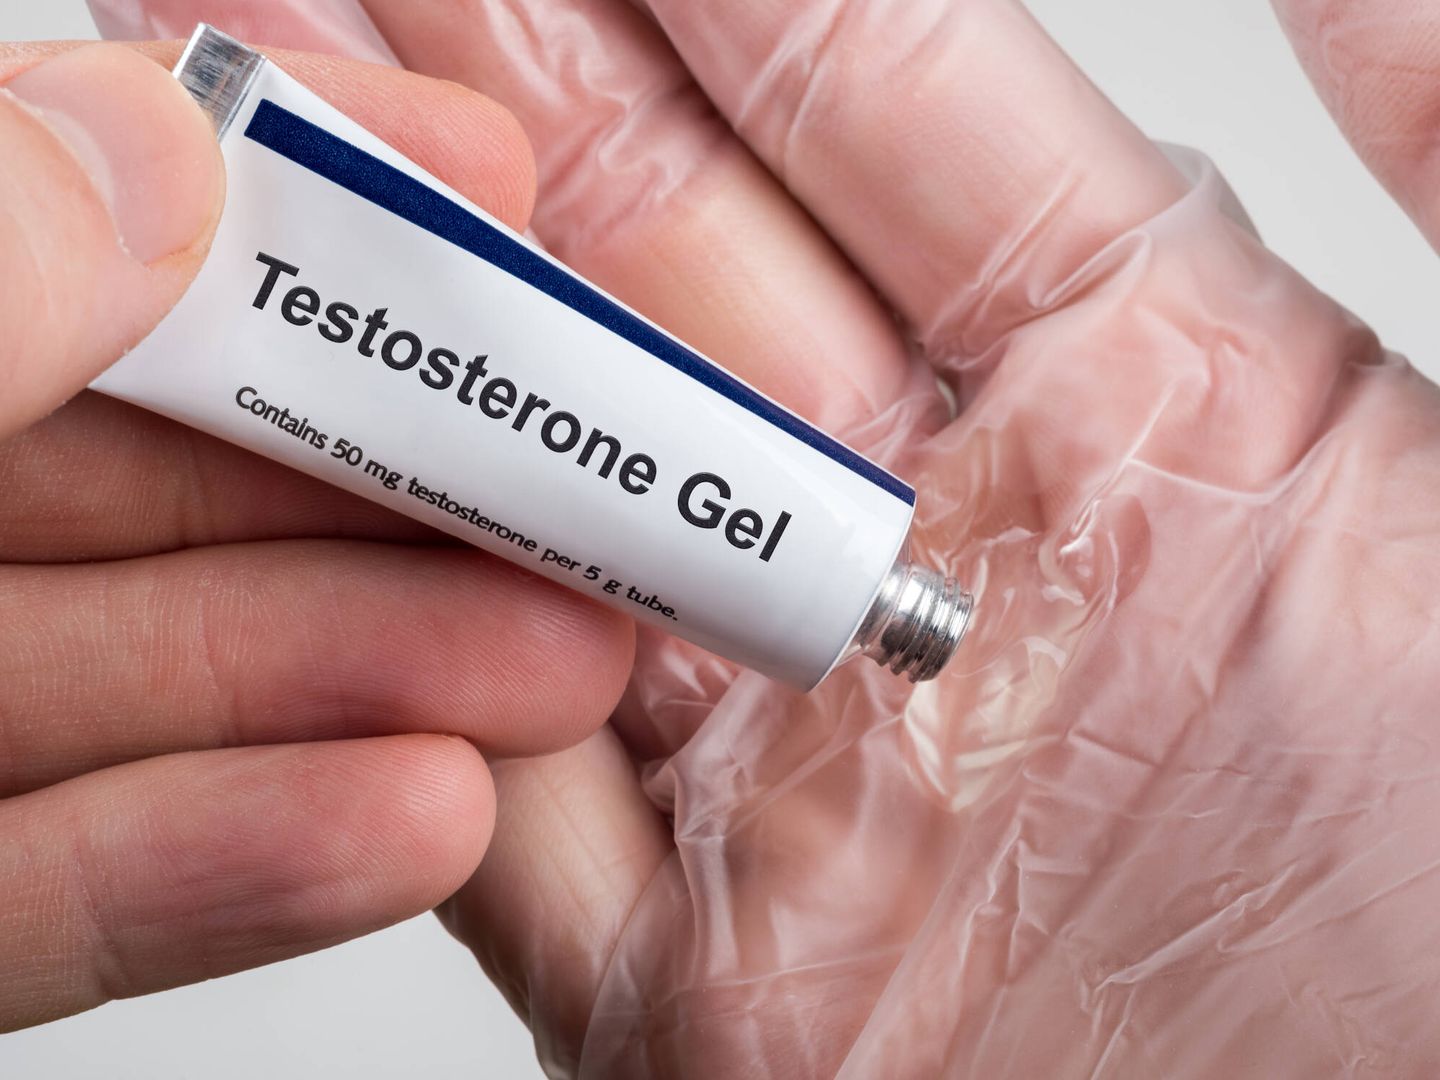 Para el estudio Traverse se ha utilizado gel de testosterona. (iStock)